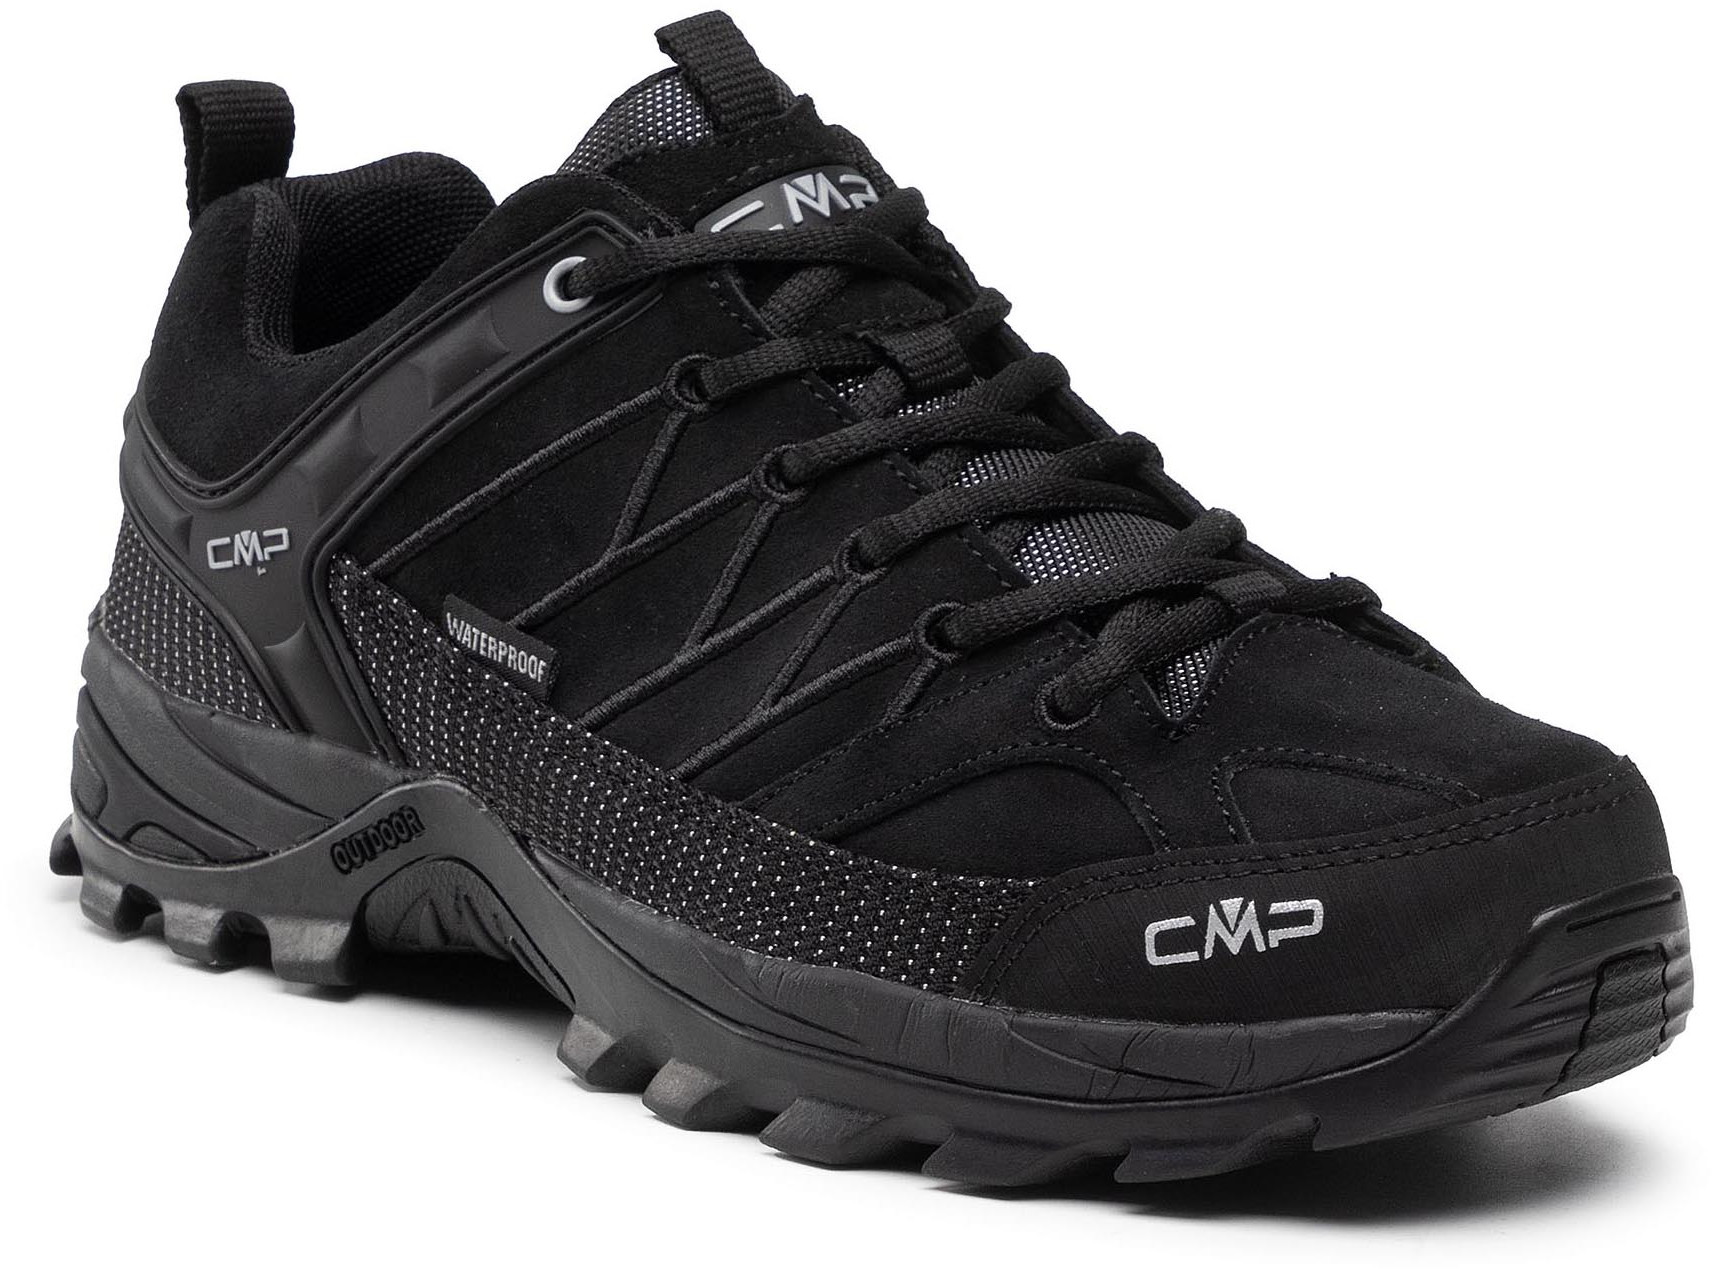 CMP Trekkingi Rigel Low Trekking Shoes Wp 3Q13247 Nero/Nero 72YF